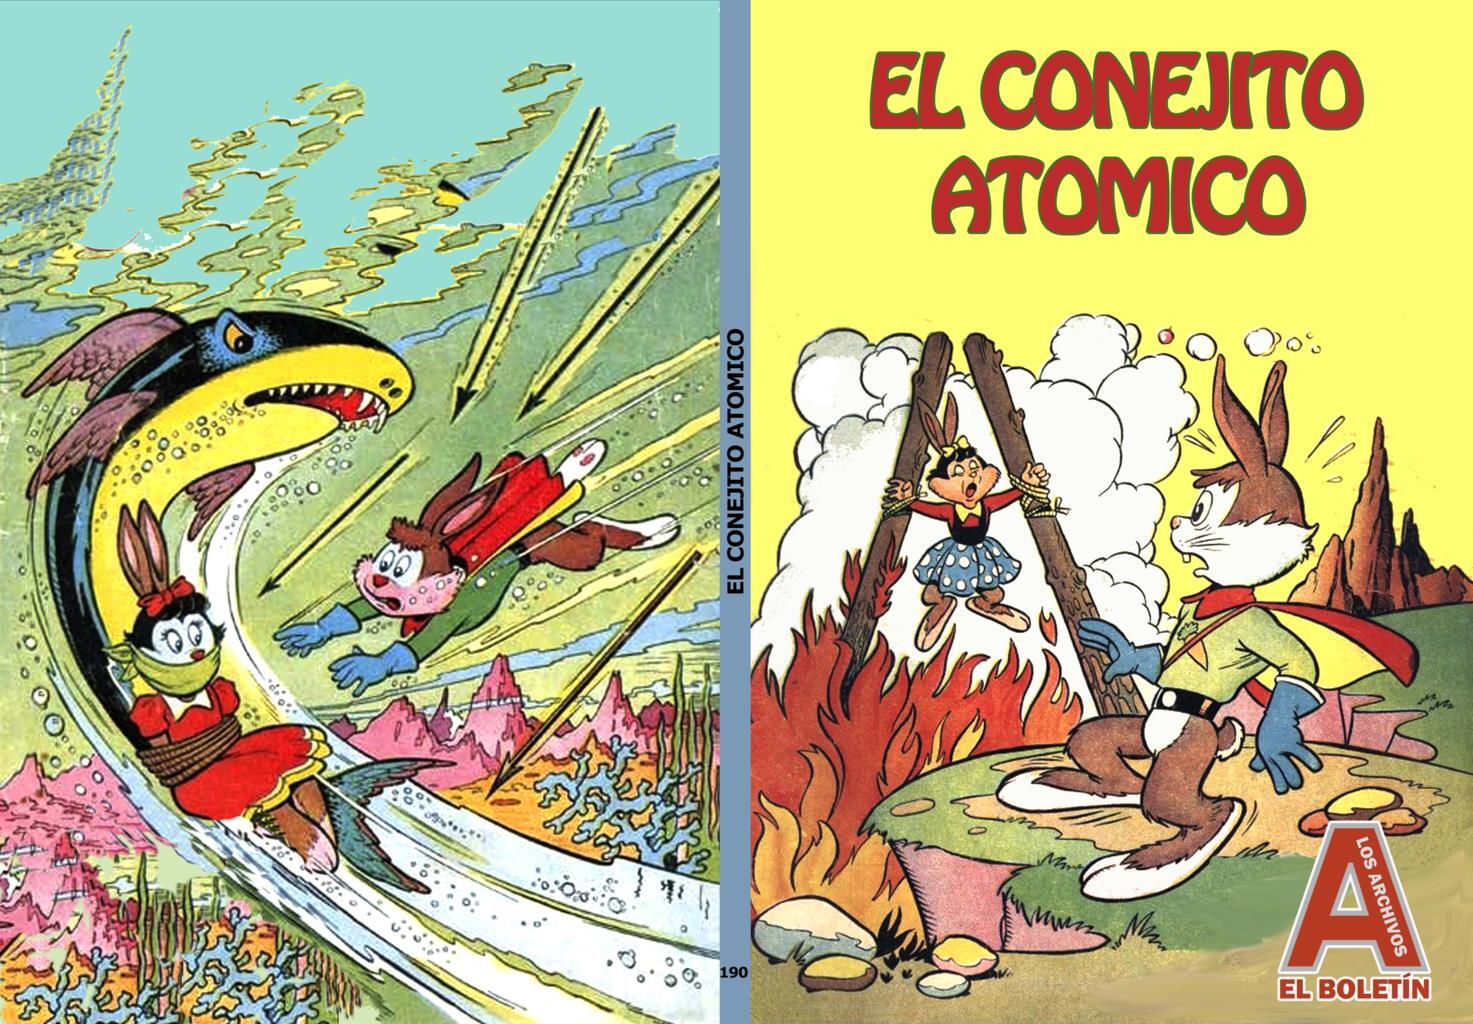 Los Archivos de El Boletin volumen 190: El conejito atomico